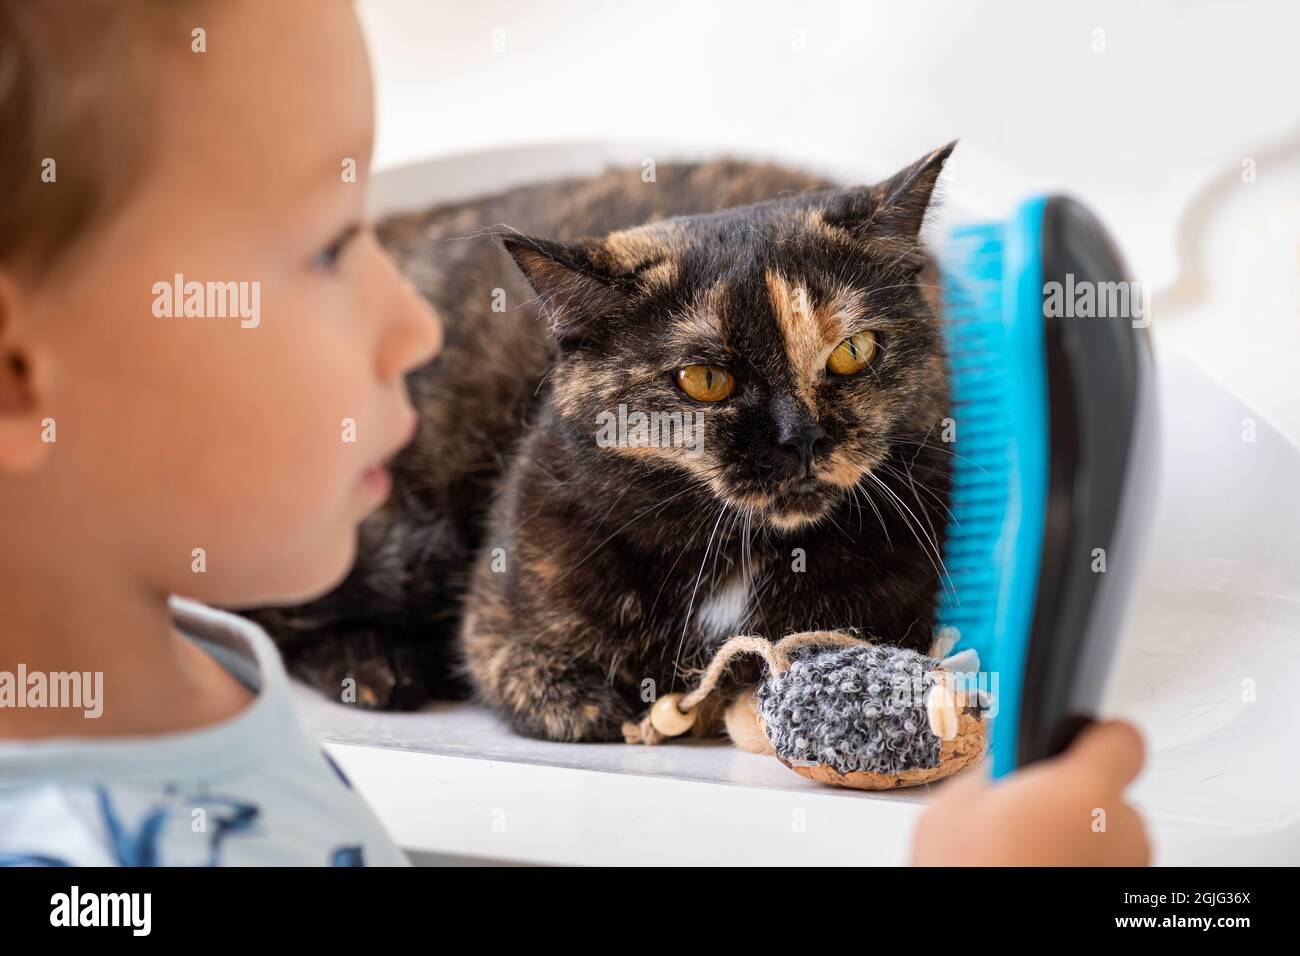 Kaukasisches Kind, das mit einem blauen Pinsel das Schildpatt einer britischen Kurzhaar-Hauskatze kämmt. Kleiner Junge, der sich die Haare einer Katze putzt. Pflegezeit. Stockfoto